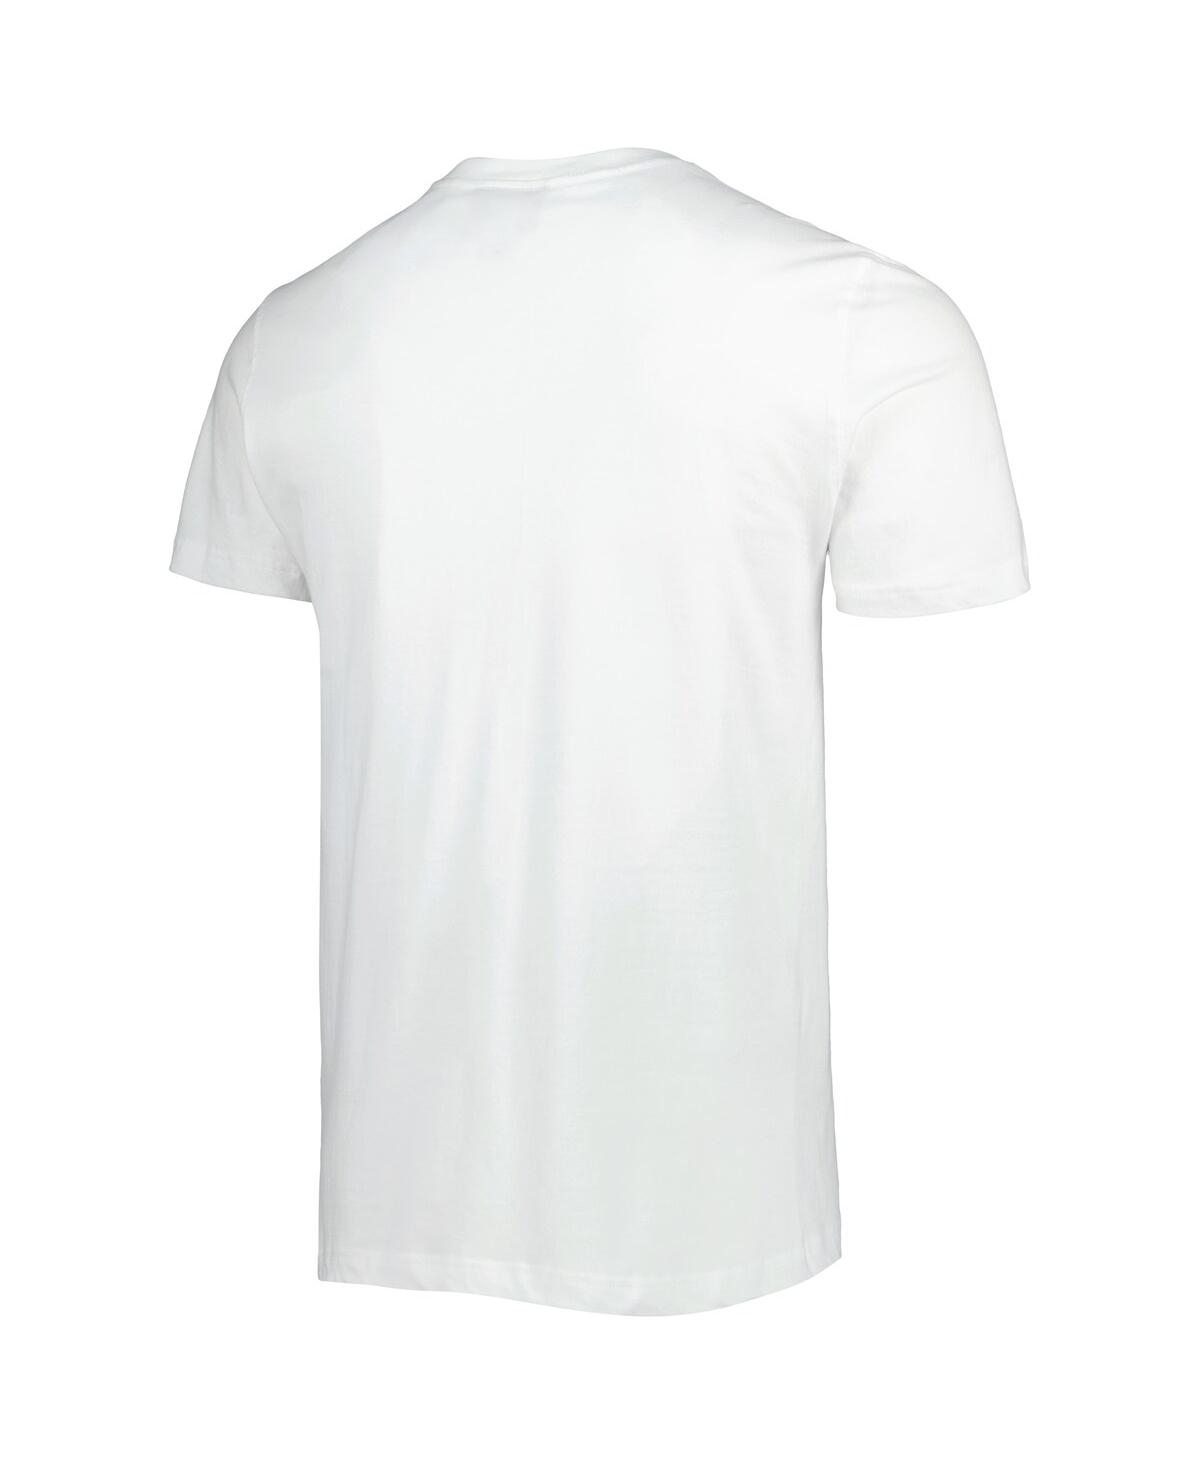 Shop New Era Men's  White Washington Nationals Historical Championship T-shirt